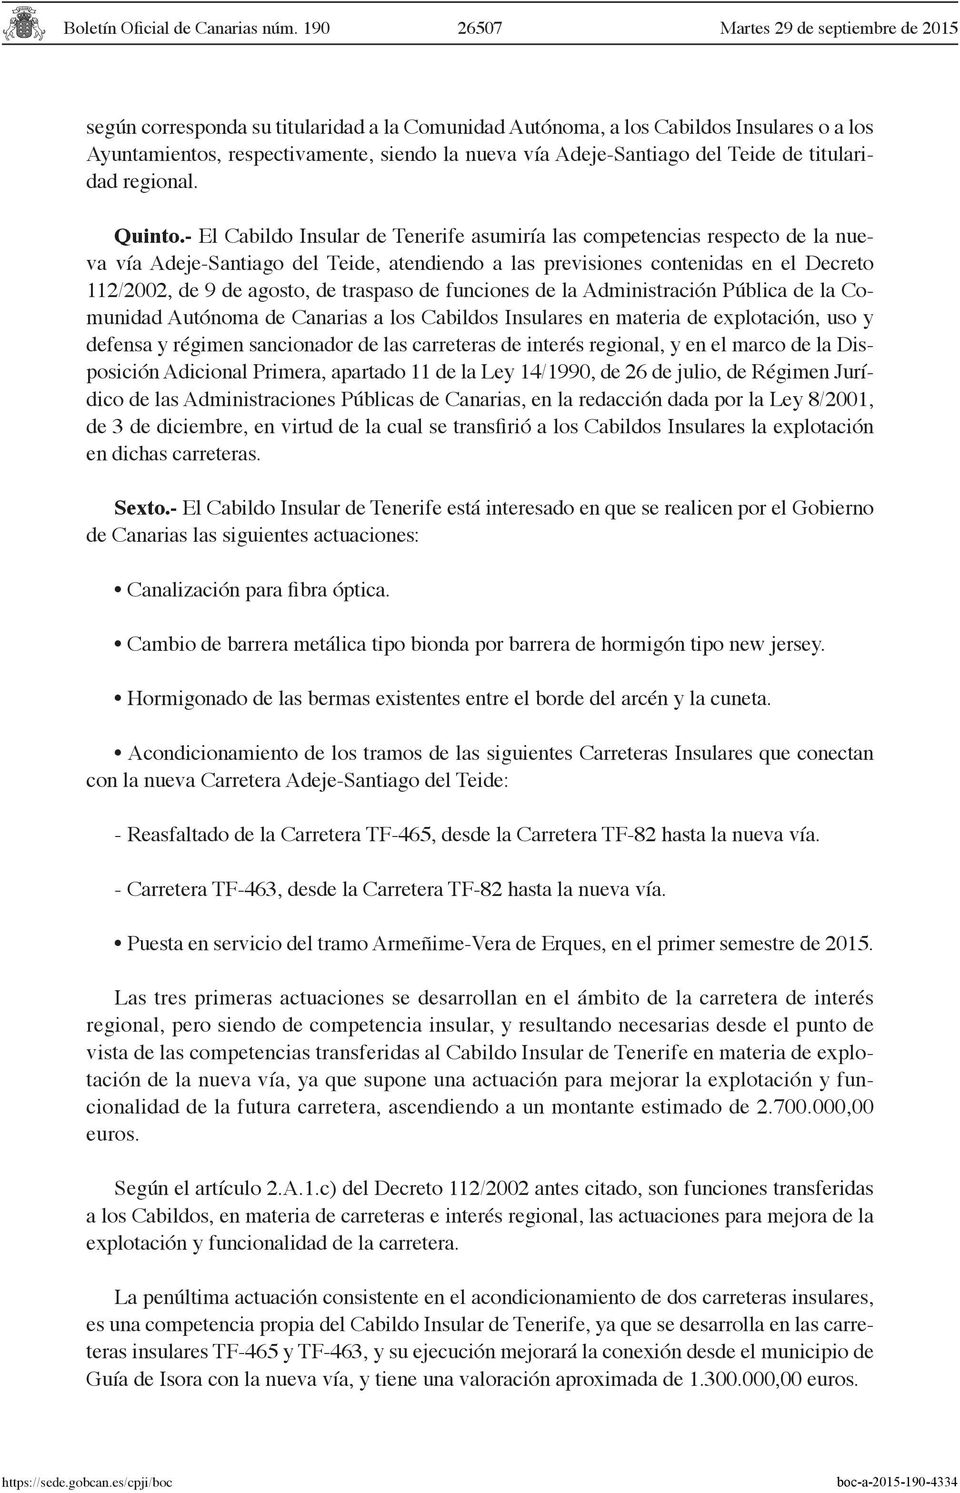 - El Cabildo Insular de Tenerife asumiría las competencias respecto de la nueva vía Adeje-Santiago del Teide, atendiendo a las previsiones contenidas en el Decreto 112/2002, de 9 de agosto, de